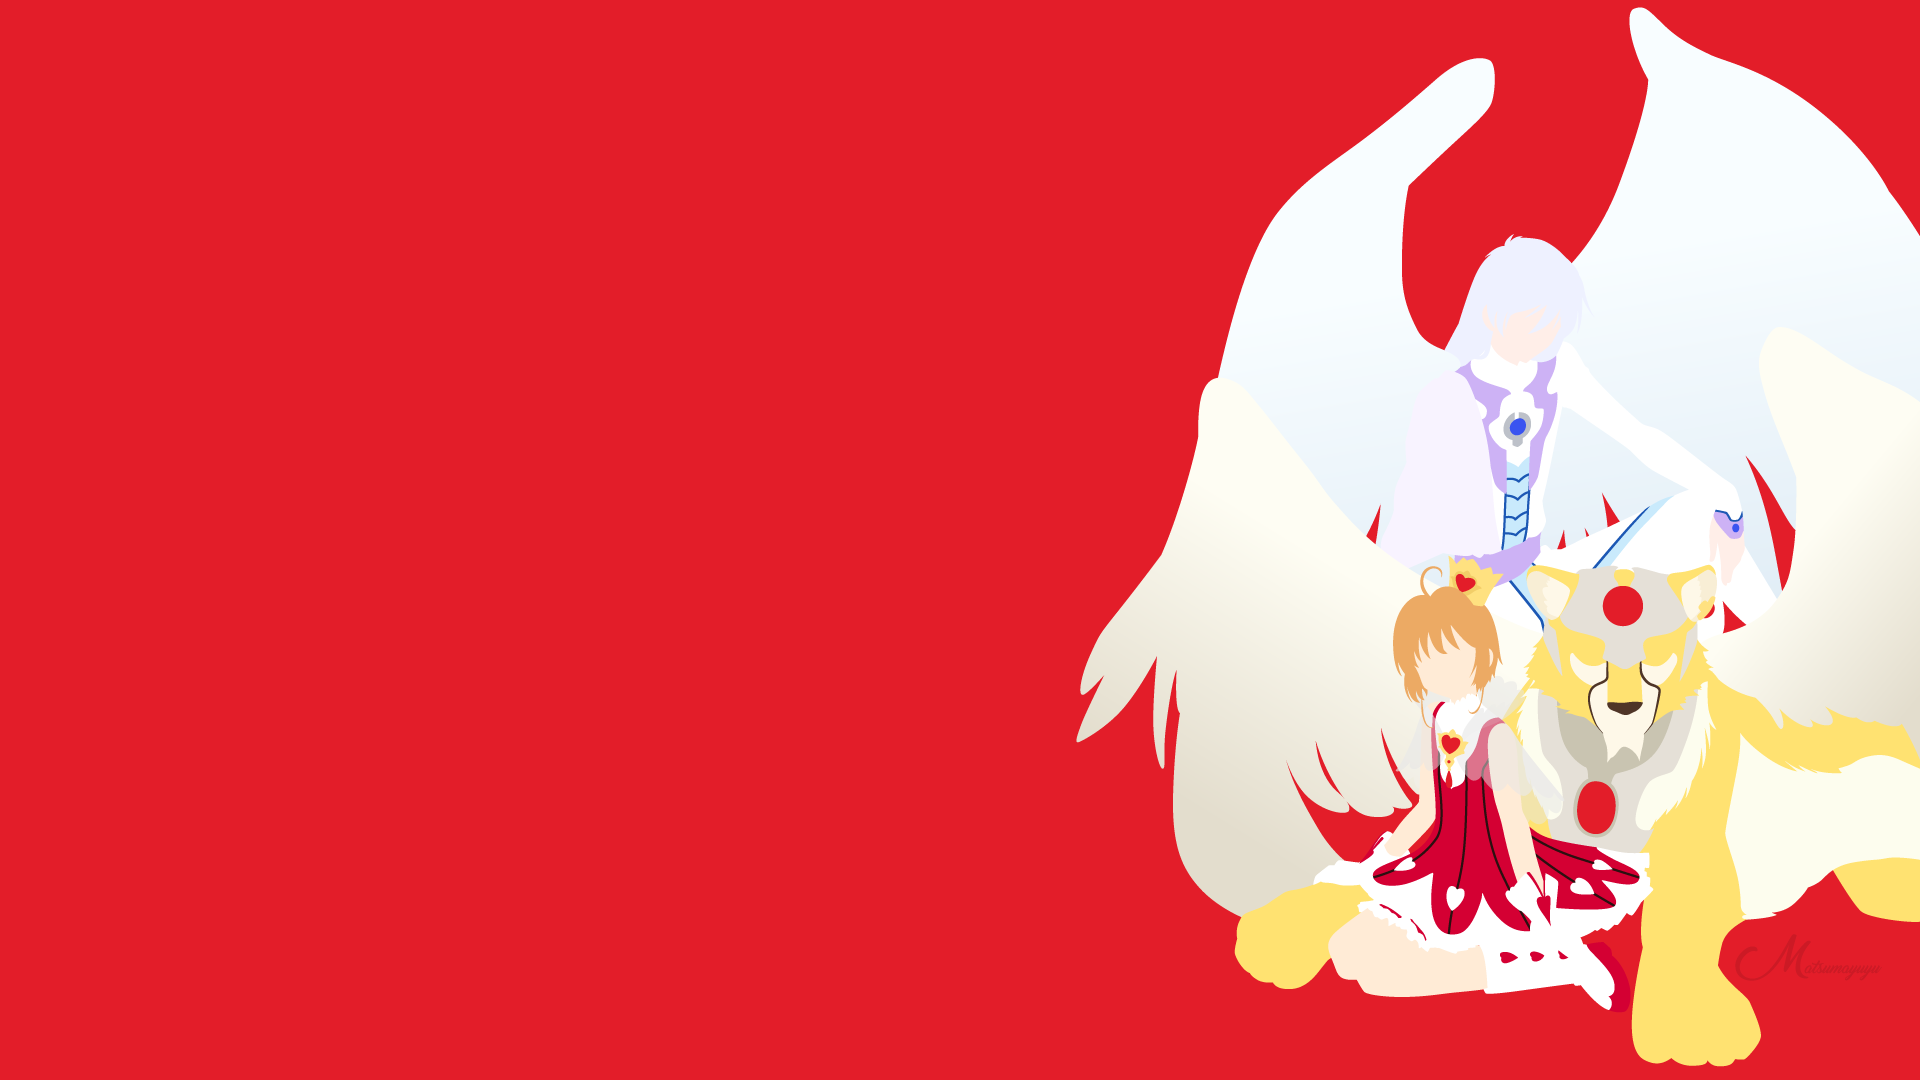 Cardcaptor Sakura Wallpaper by SailorTrekkie92 on DeviantArt